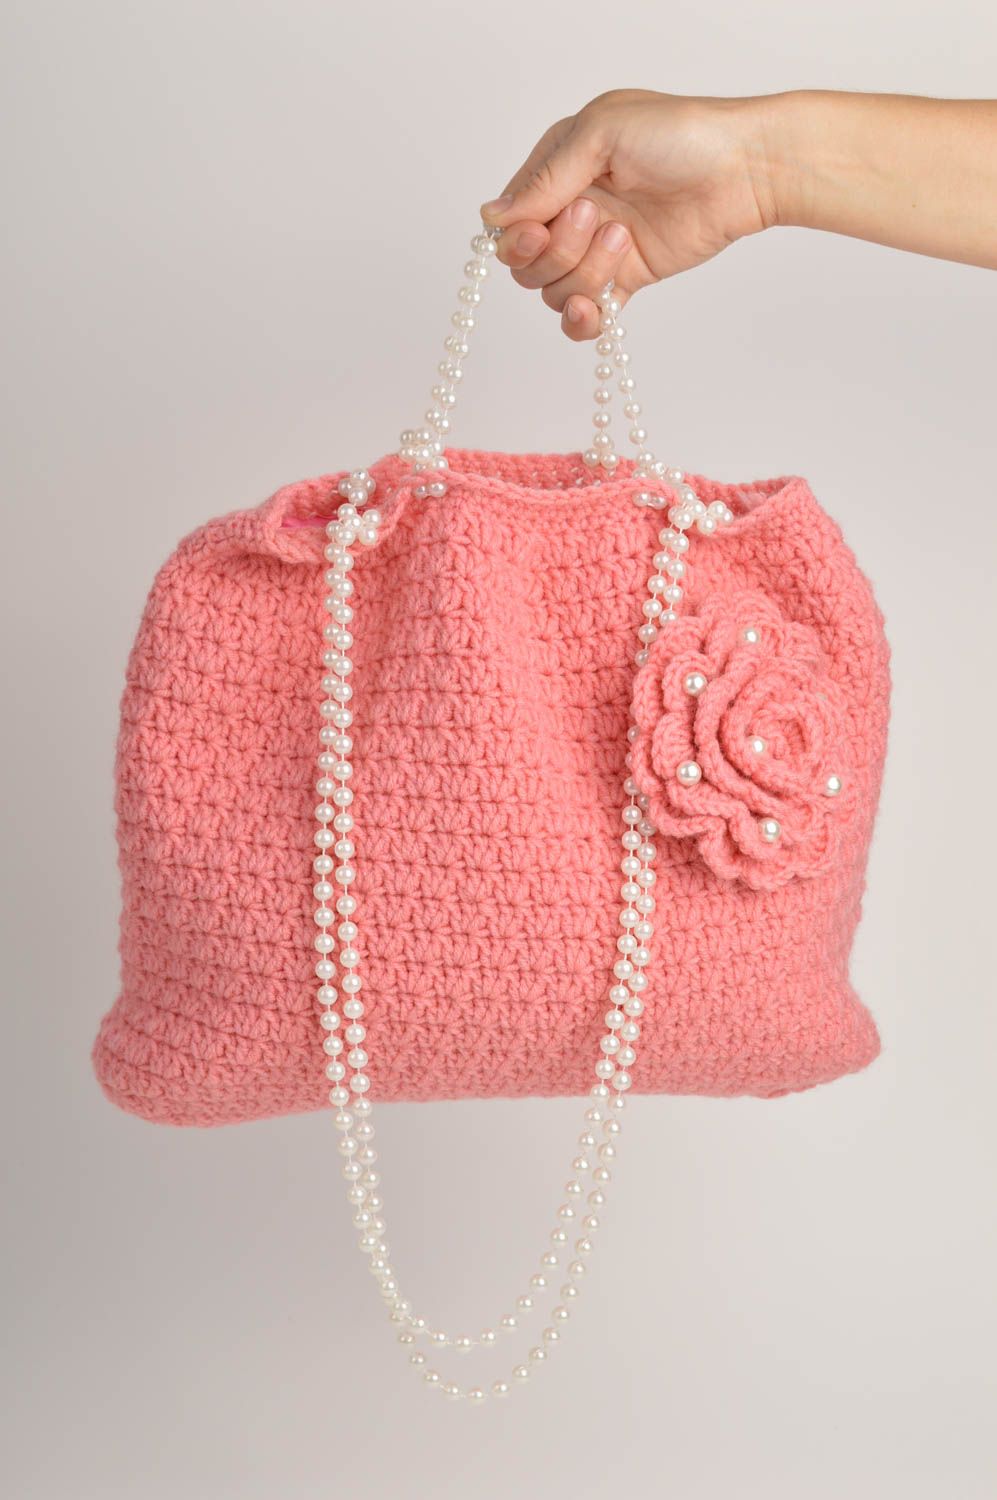 Sac à main tricoté au crochet Sac fait main rose élégant Accessoire femme photo 2